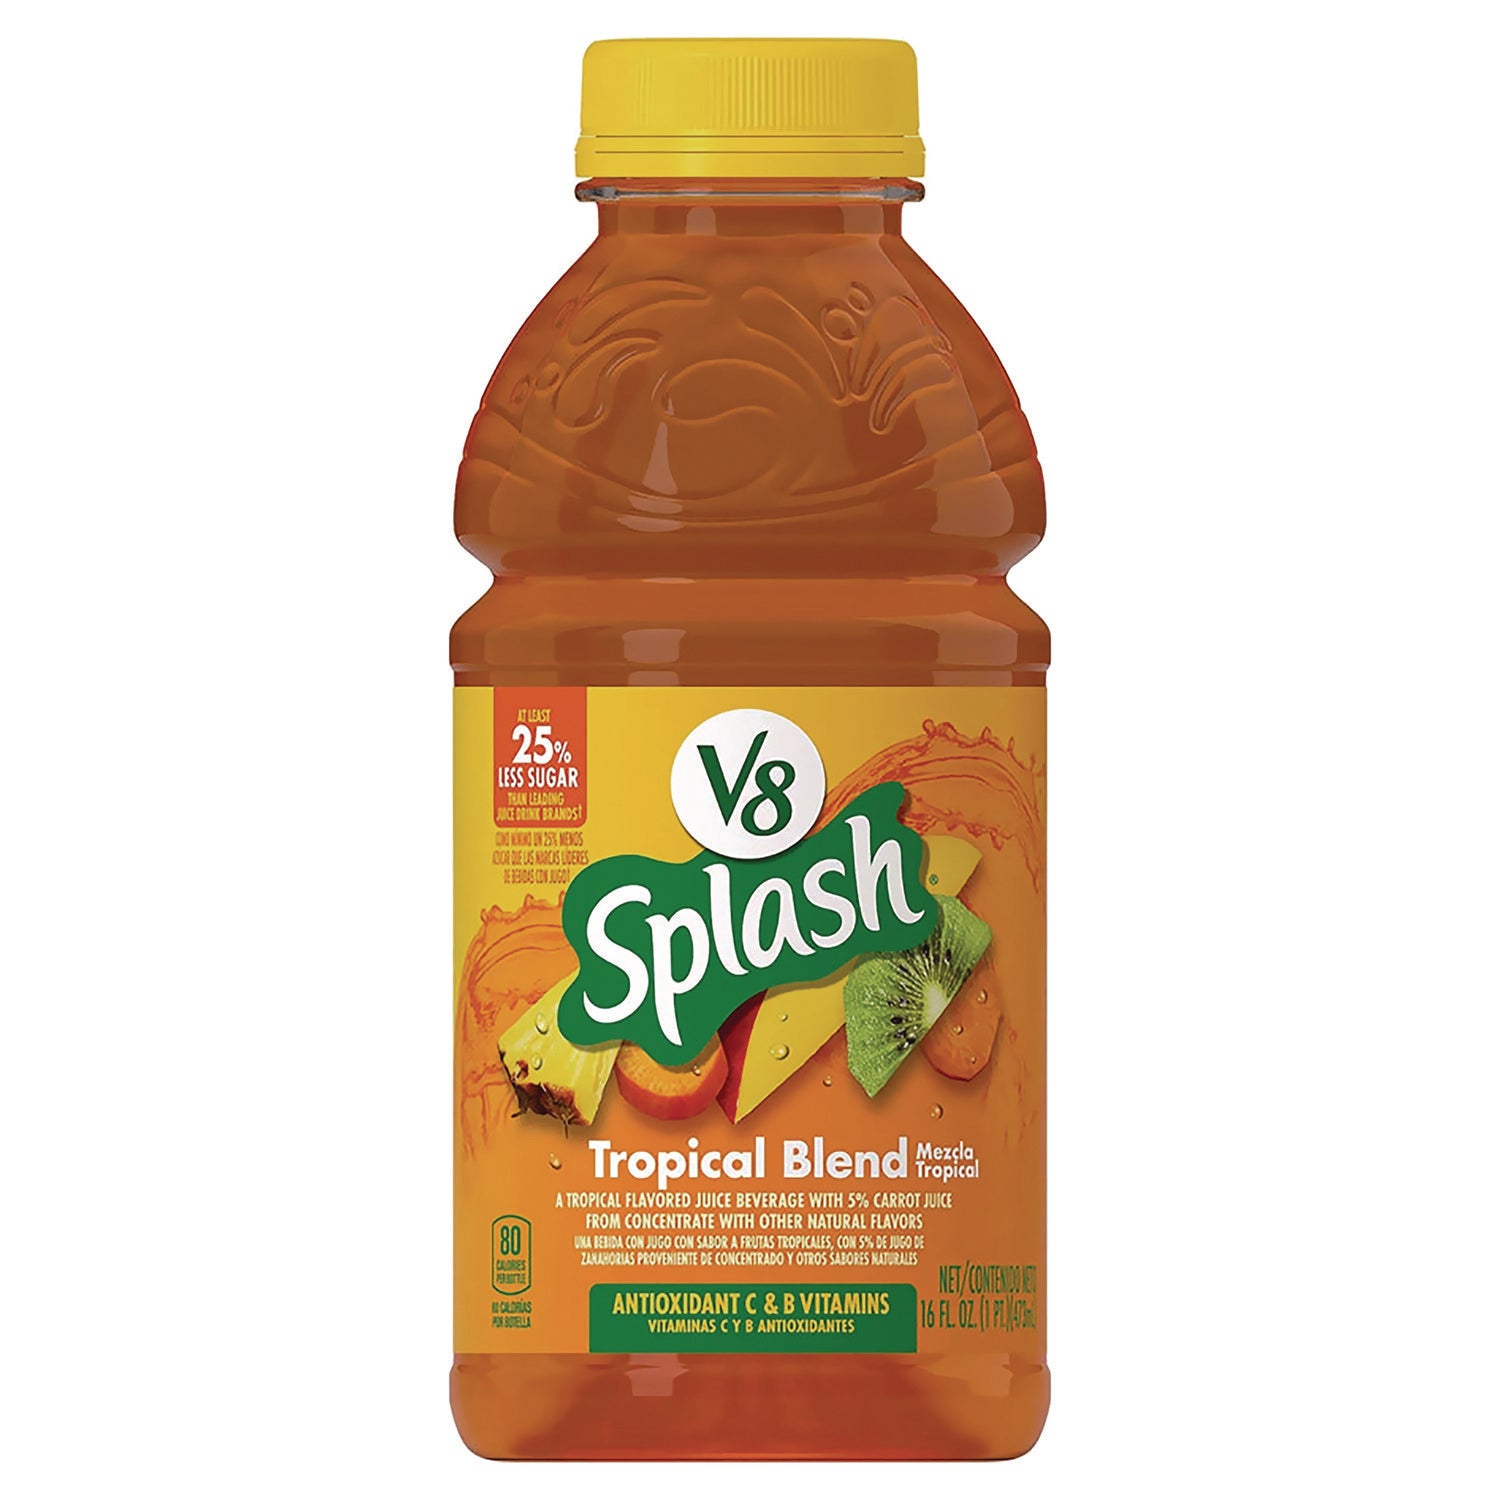 splash-tropical-blend-juice-drink-16-oz-bottle-12-carton-ships-in-1-3-business-days_grr20902593 - 2